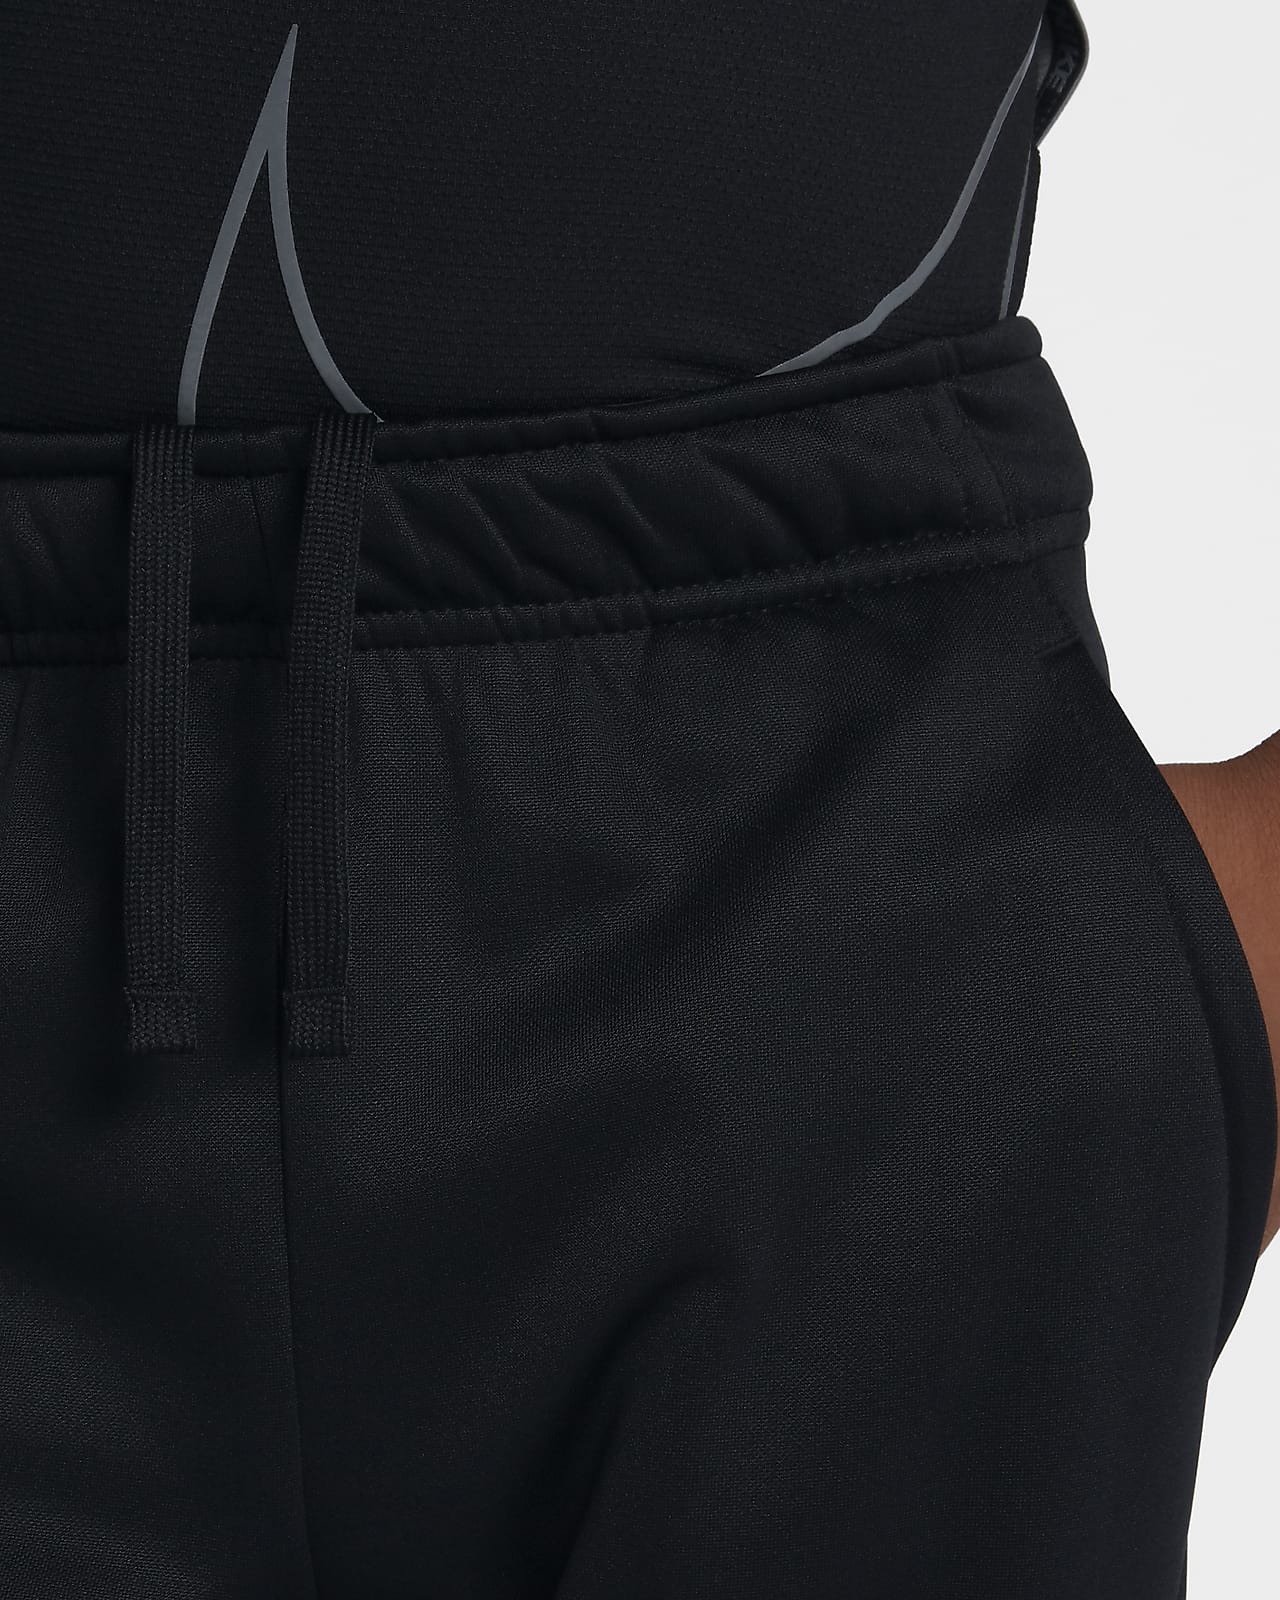 Nike Boys 8-20 Dri-FIT Therma Fleece Training Pants, Large Black